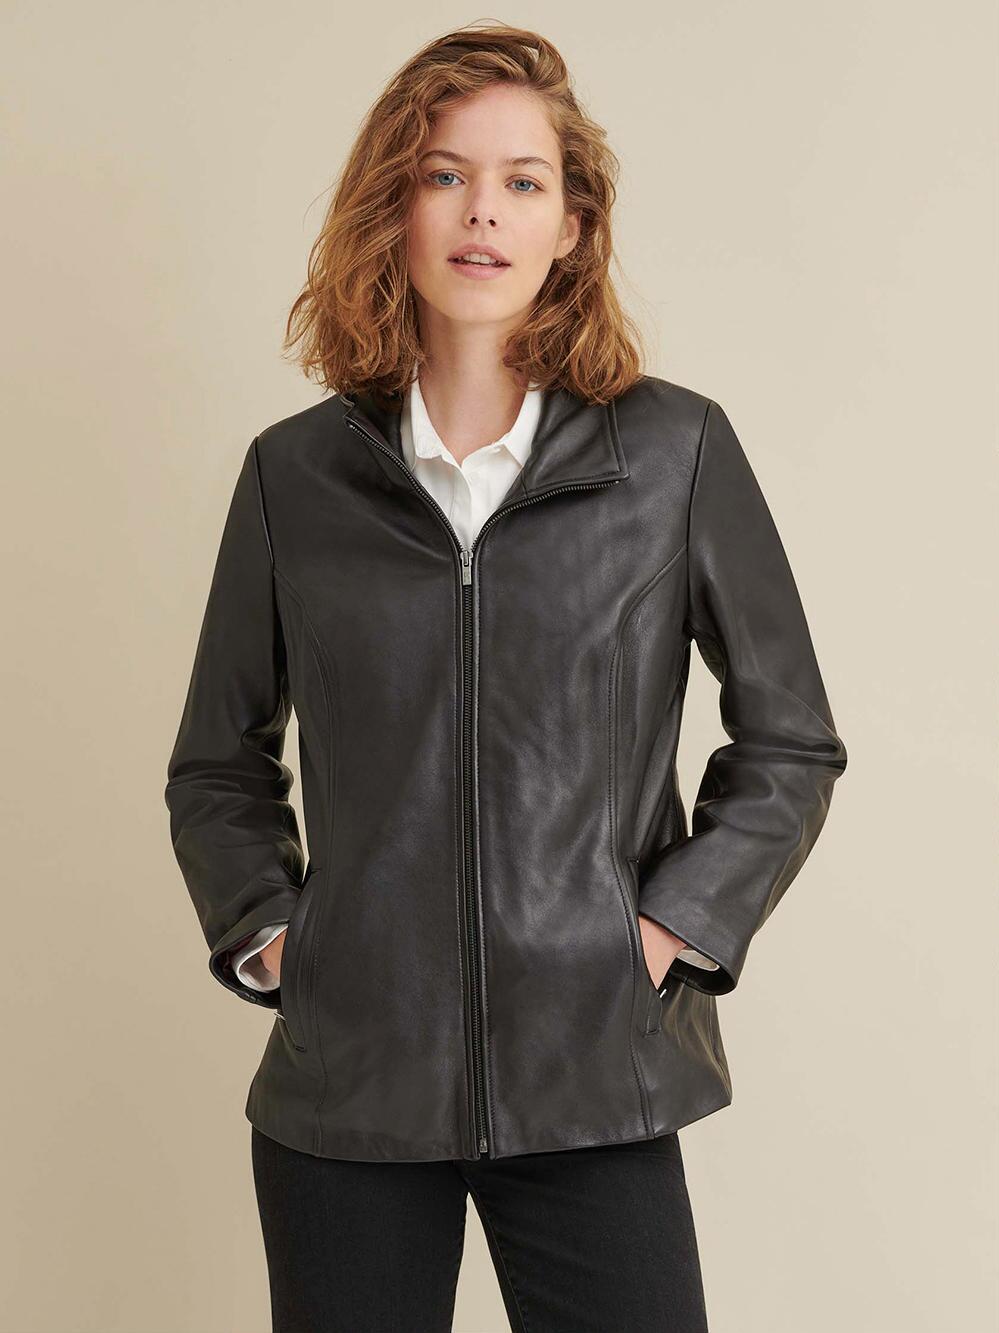 Formal Black Leather Jacket For Sale